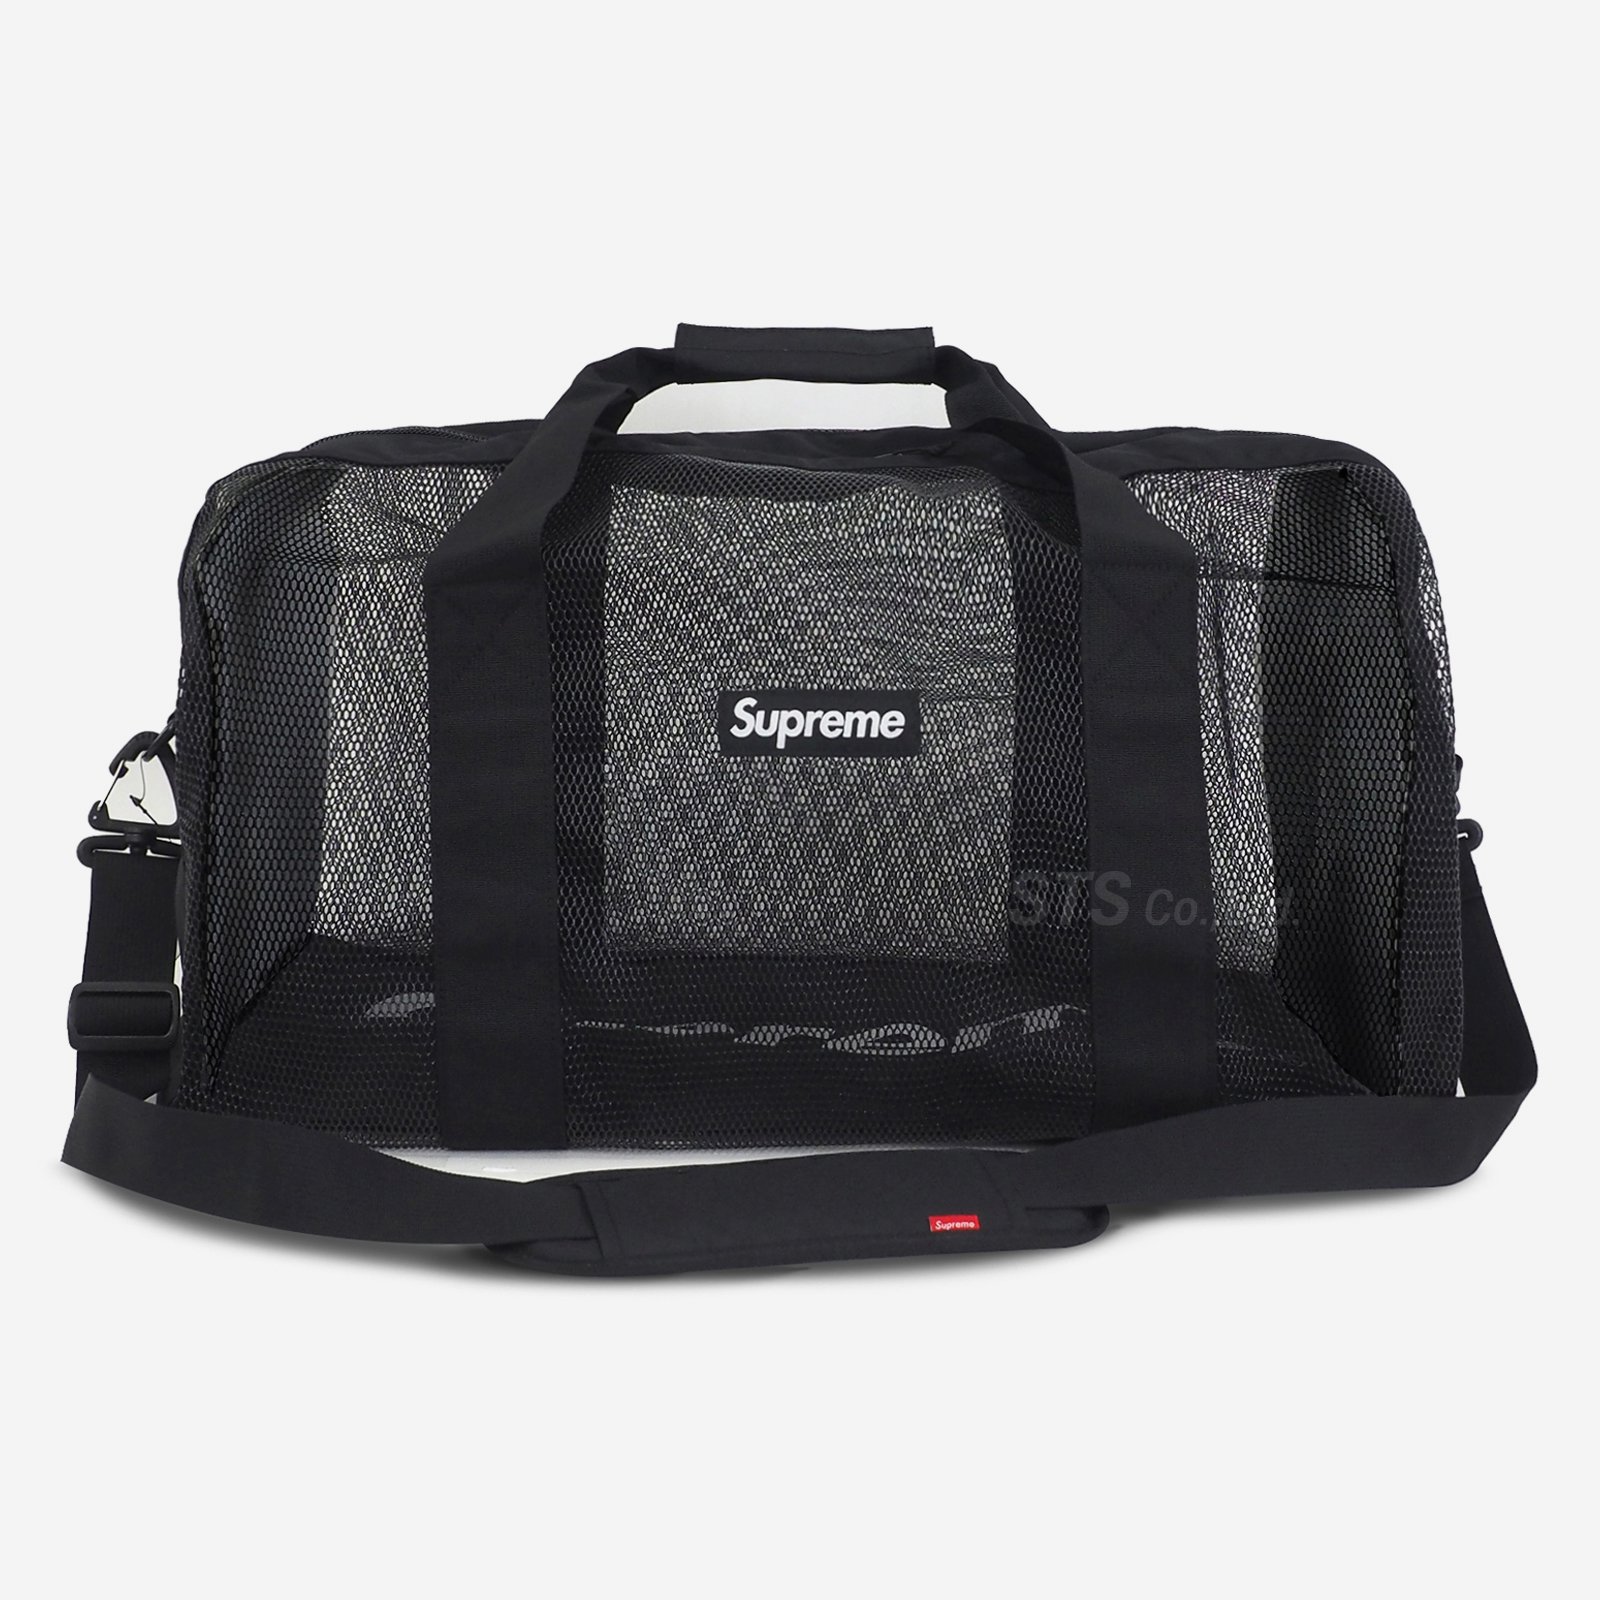 Supreme - Big Duffle Bag - UG.SHAFT